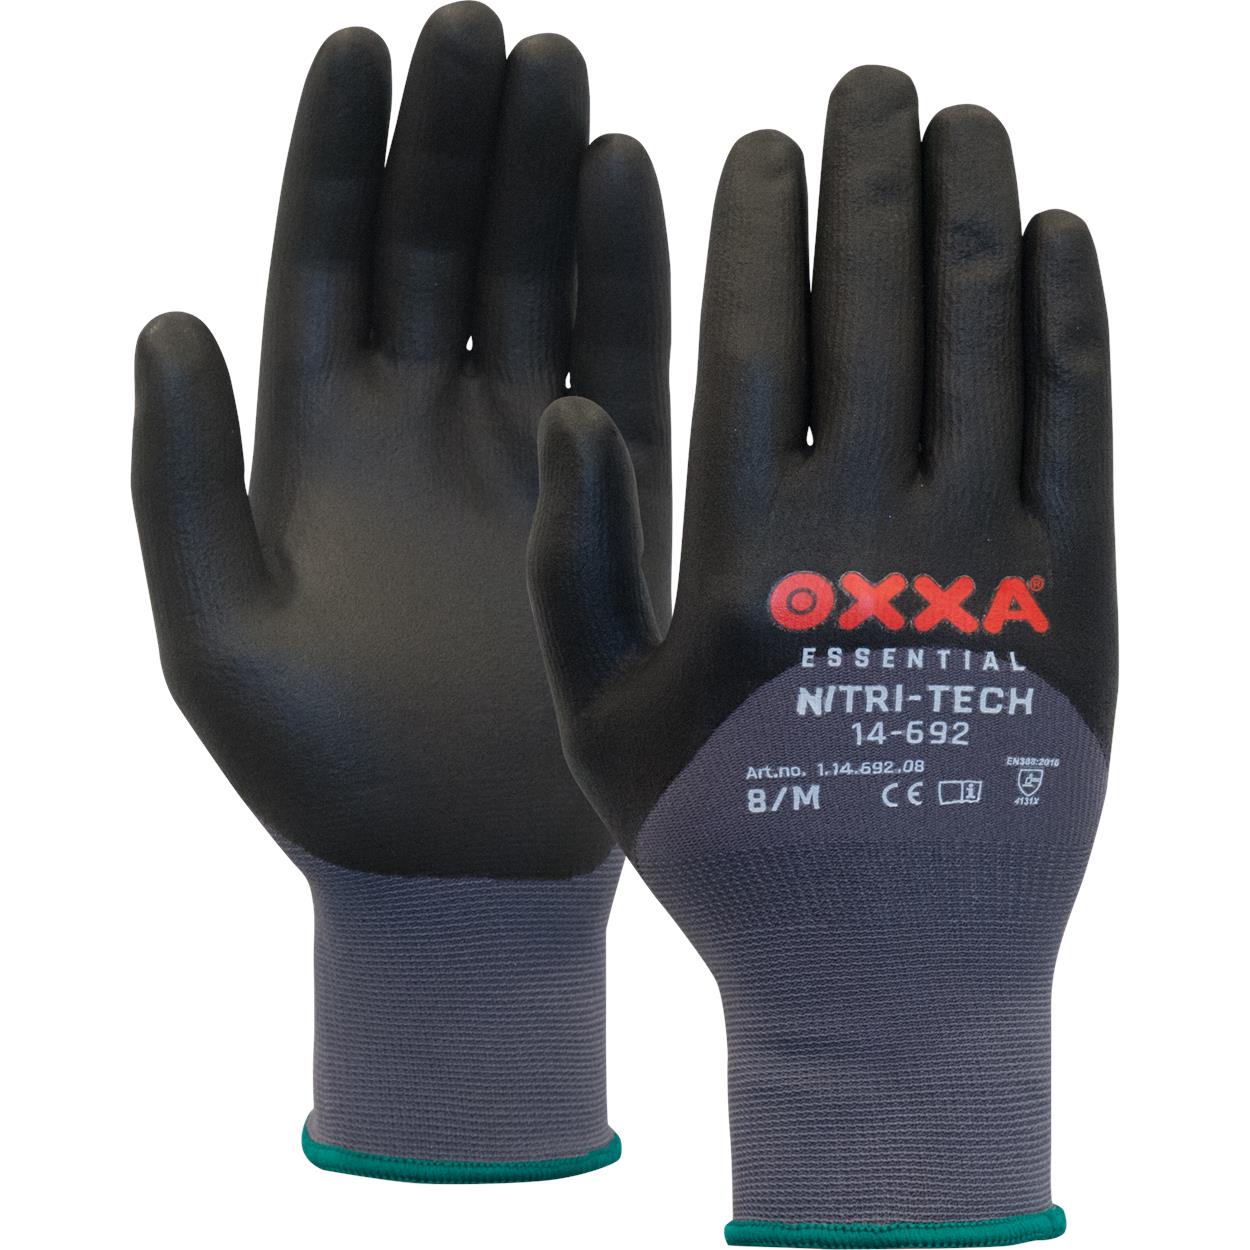 OXXA Nitri-Tech 14-692 handschoen